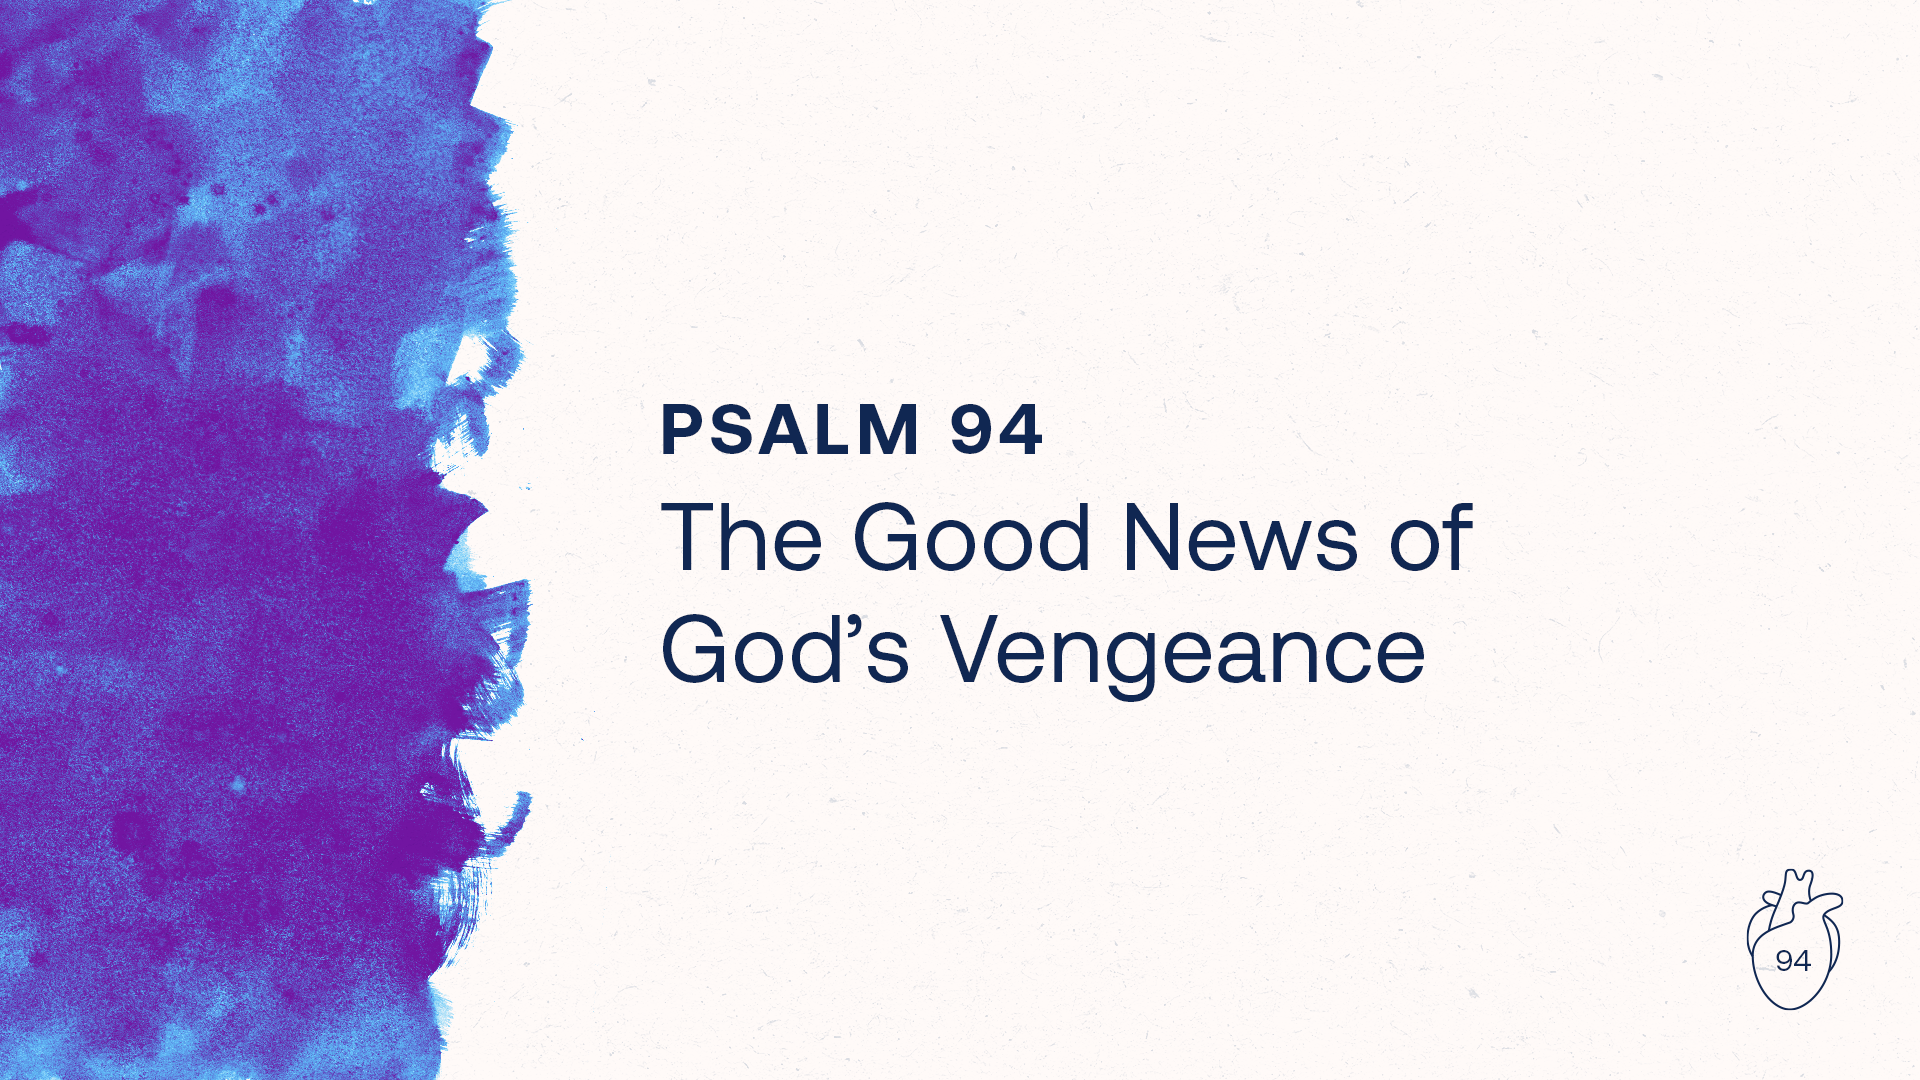 The Good News of God’s Vengeance